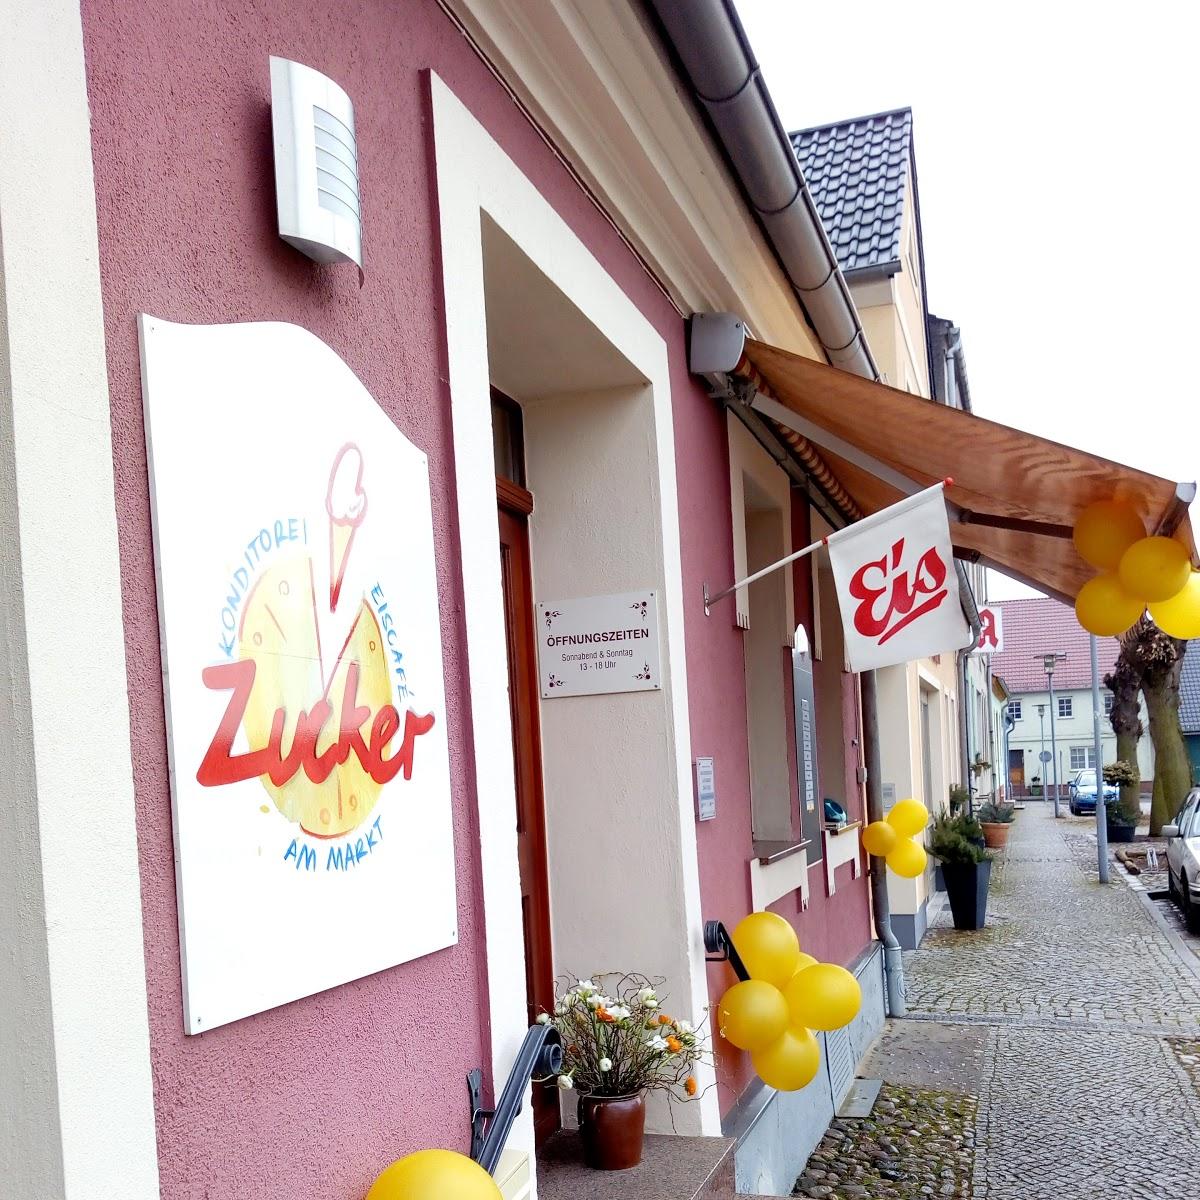 Restaurant "Zucker am Markt - Konditorei & Eiscafé" in Friedland